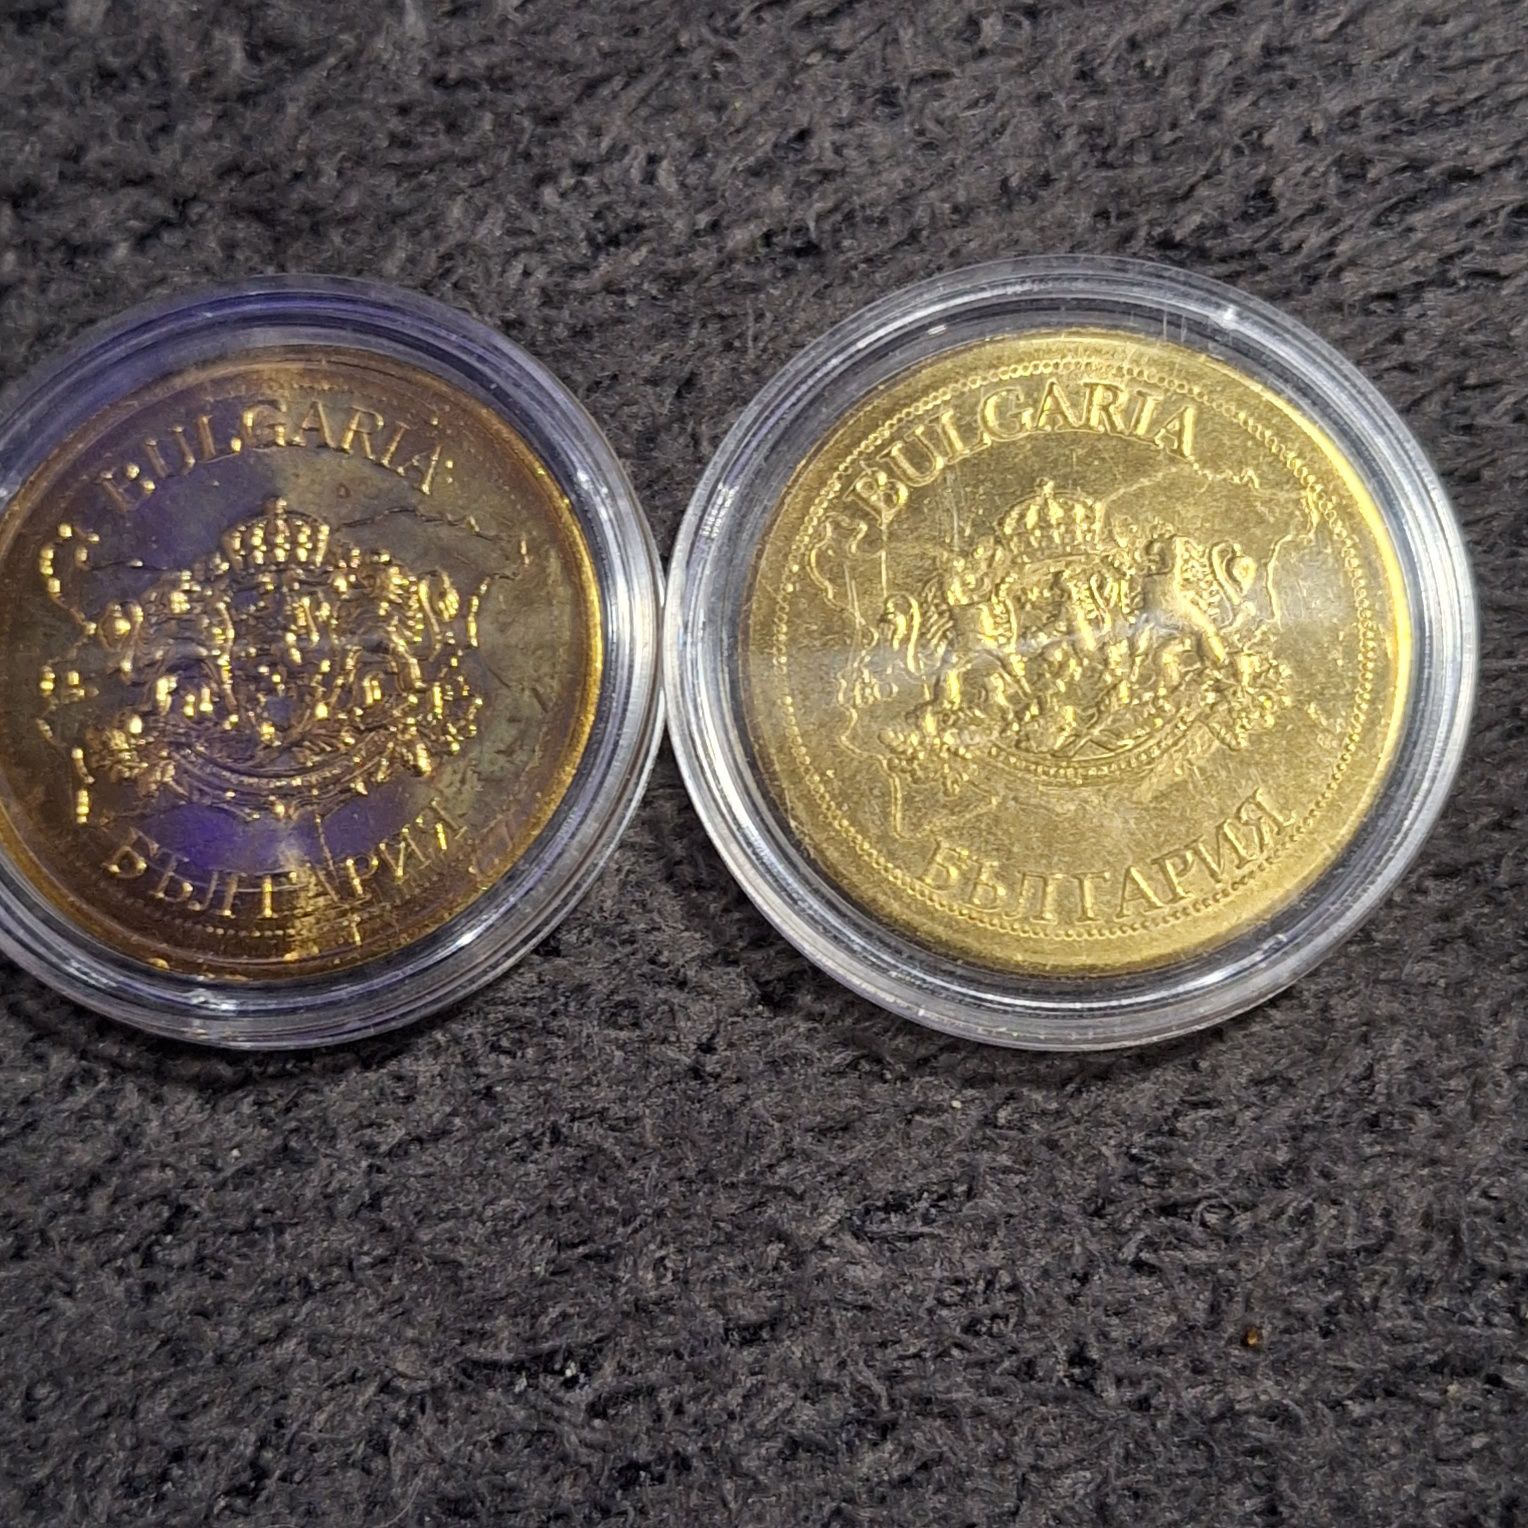 Сувенирни монети Панагюрище и Ловеч